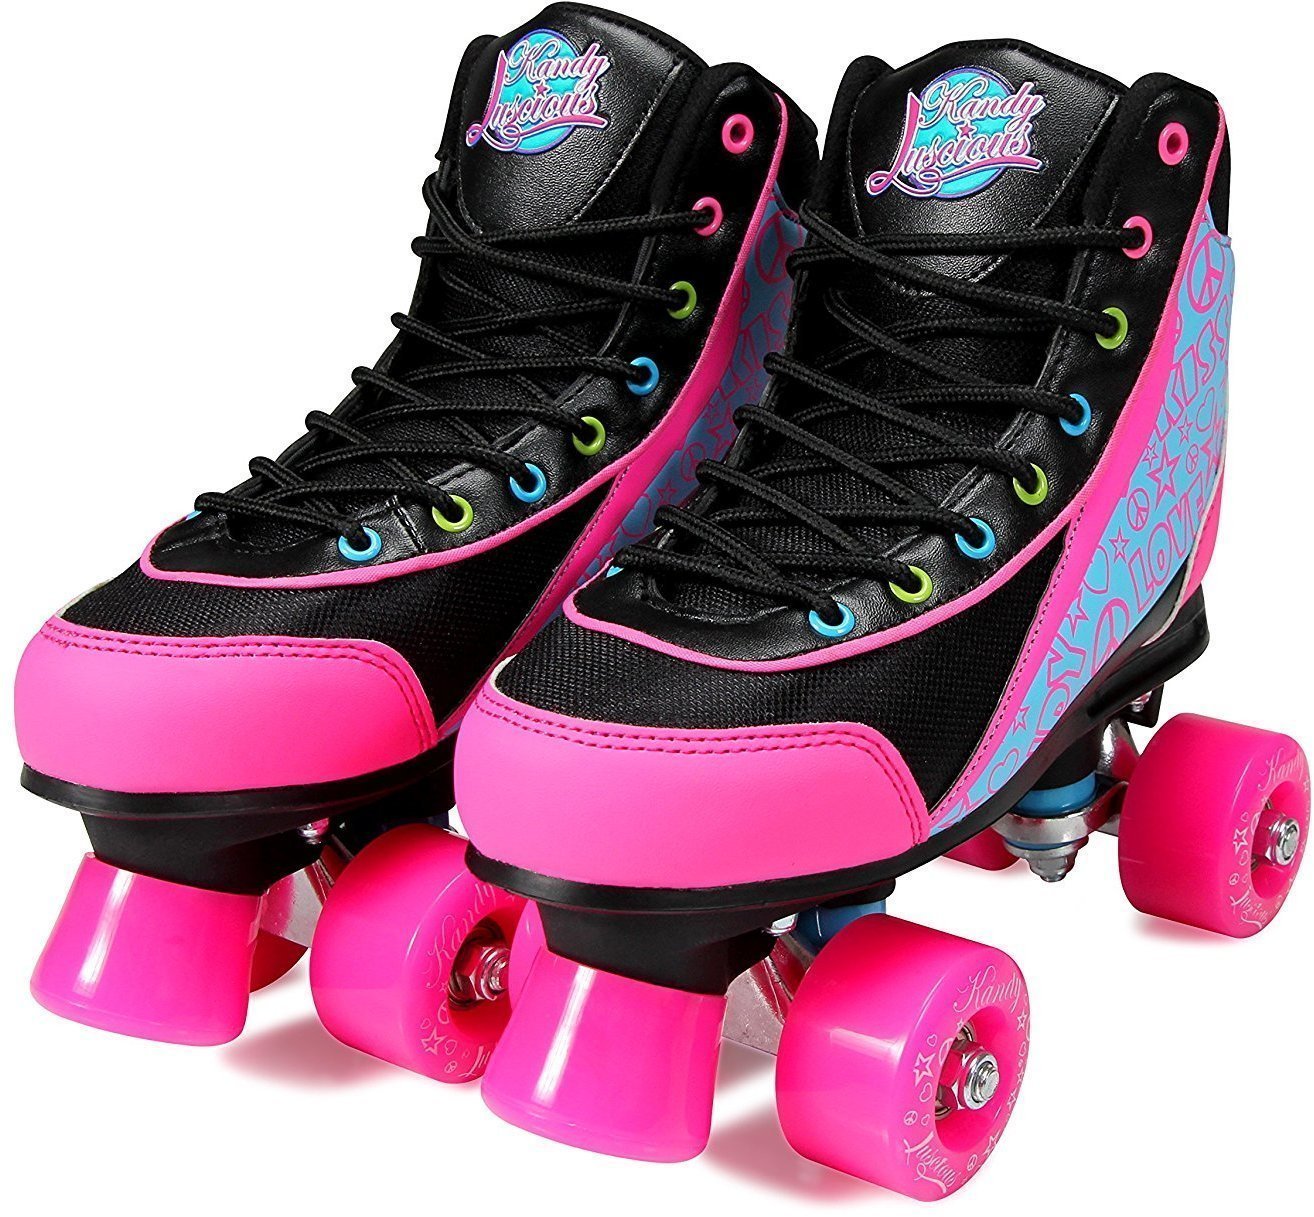 Patins em linha Luscious Skates Disco Diva 38 Black/Pink